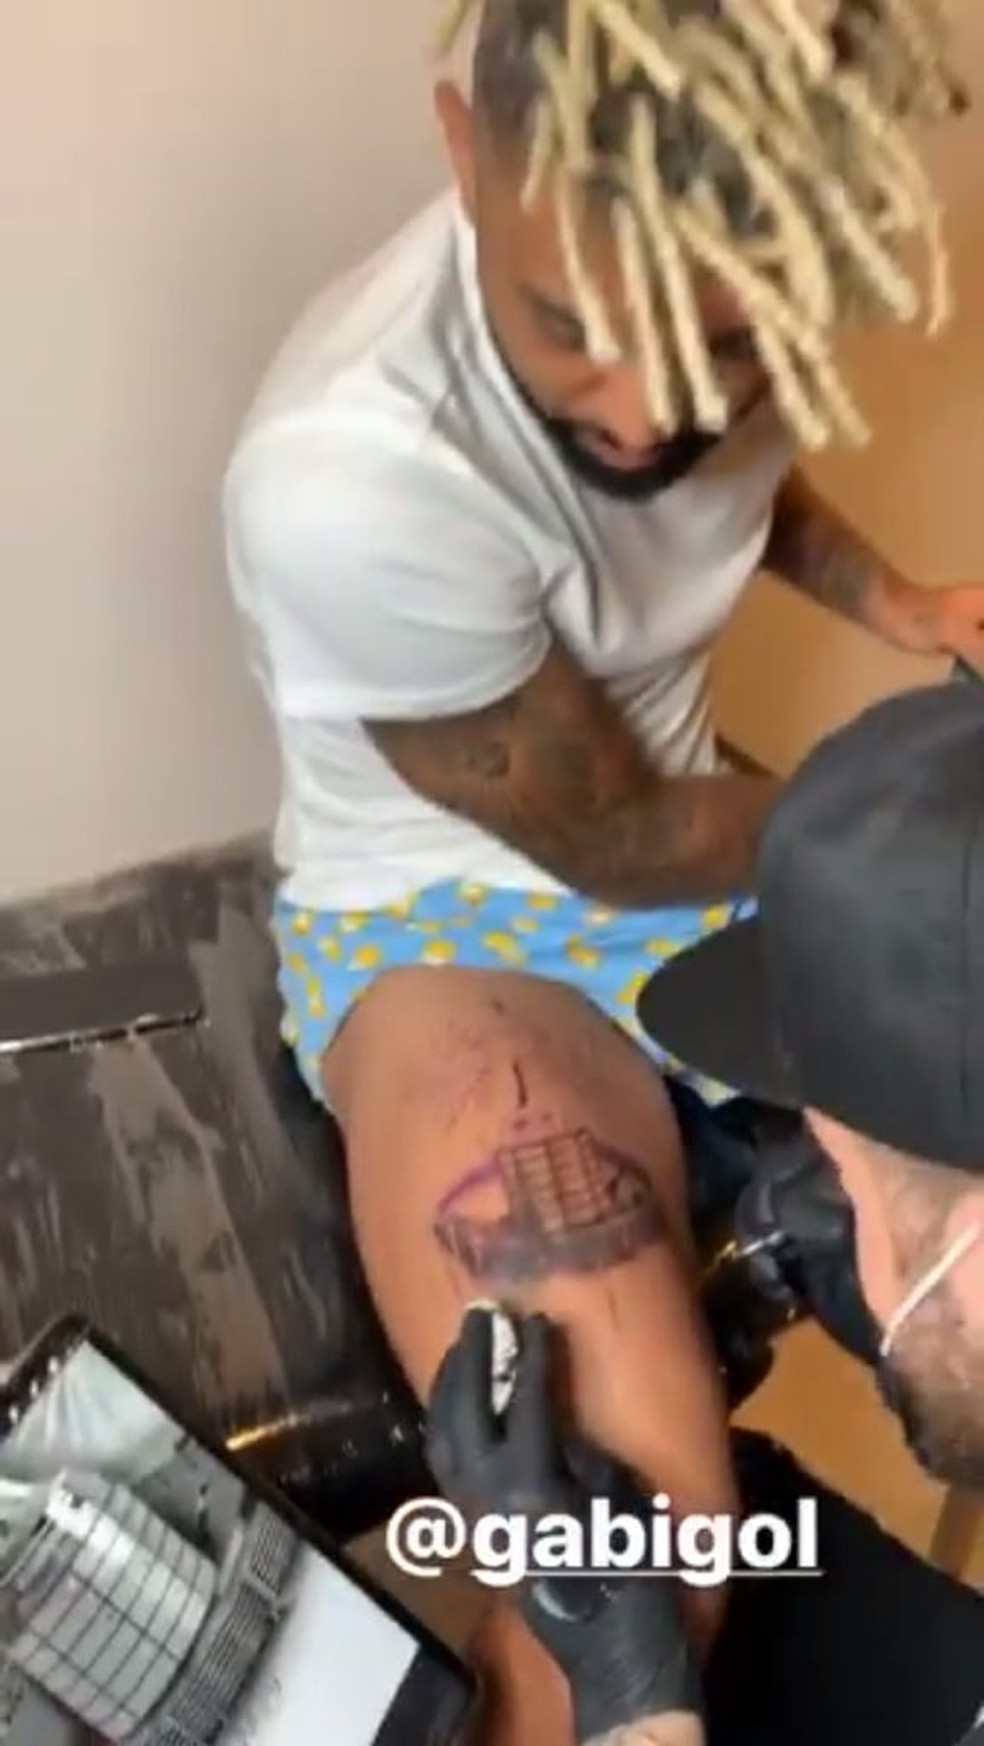 Gabigol tatuando na coxa a taça da Libertadores 2019 — Foto: Reprodução